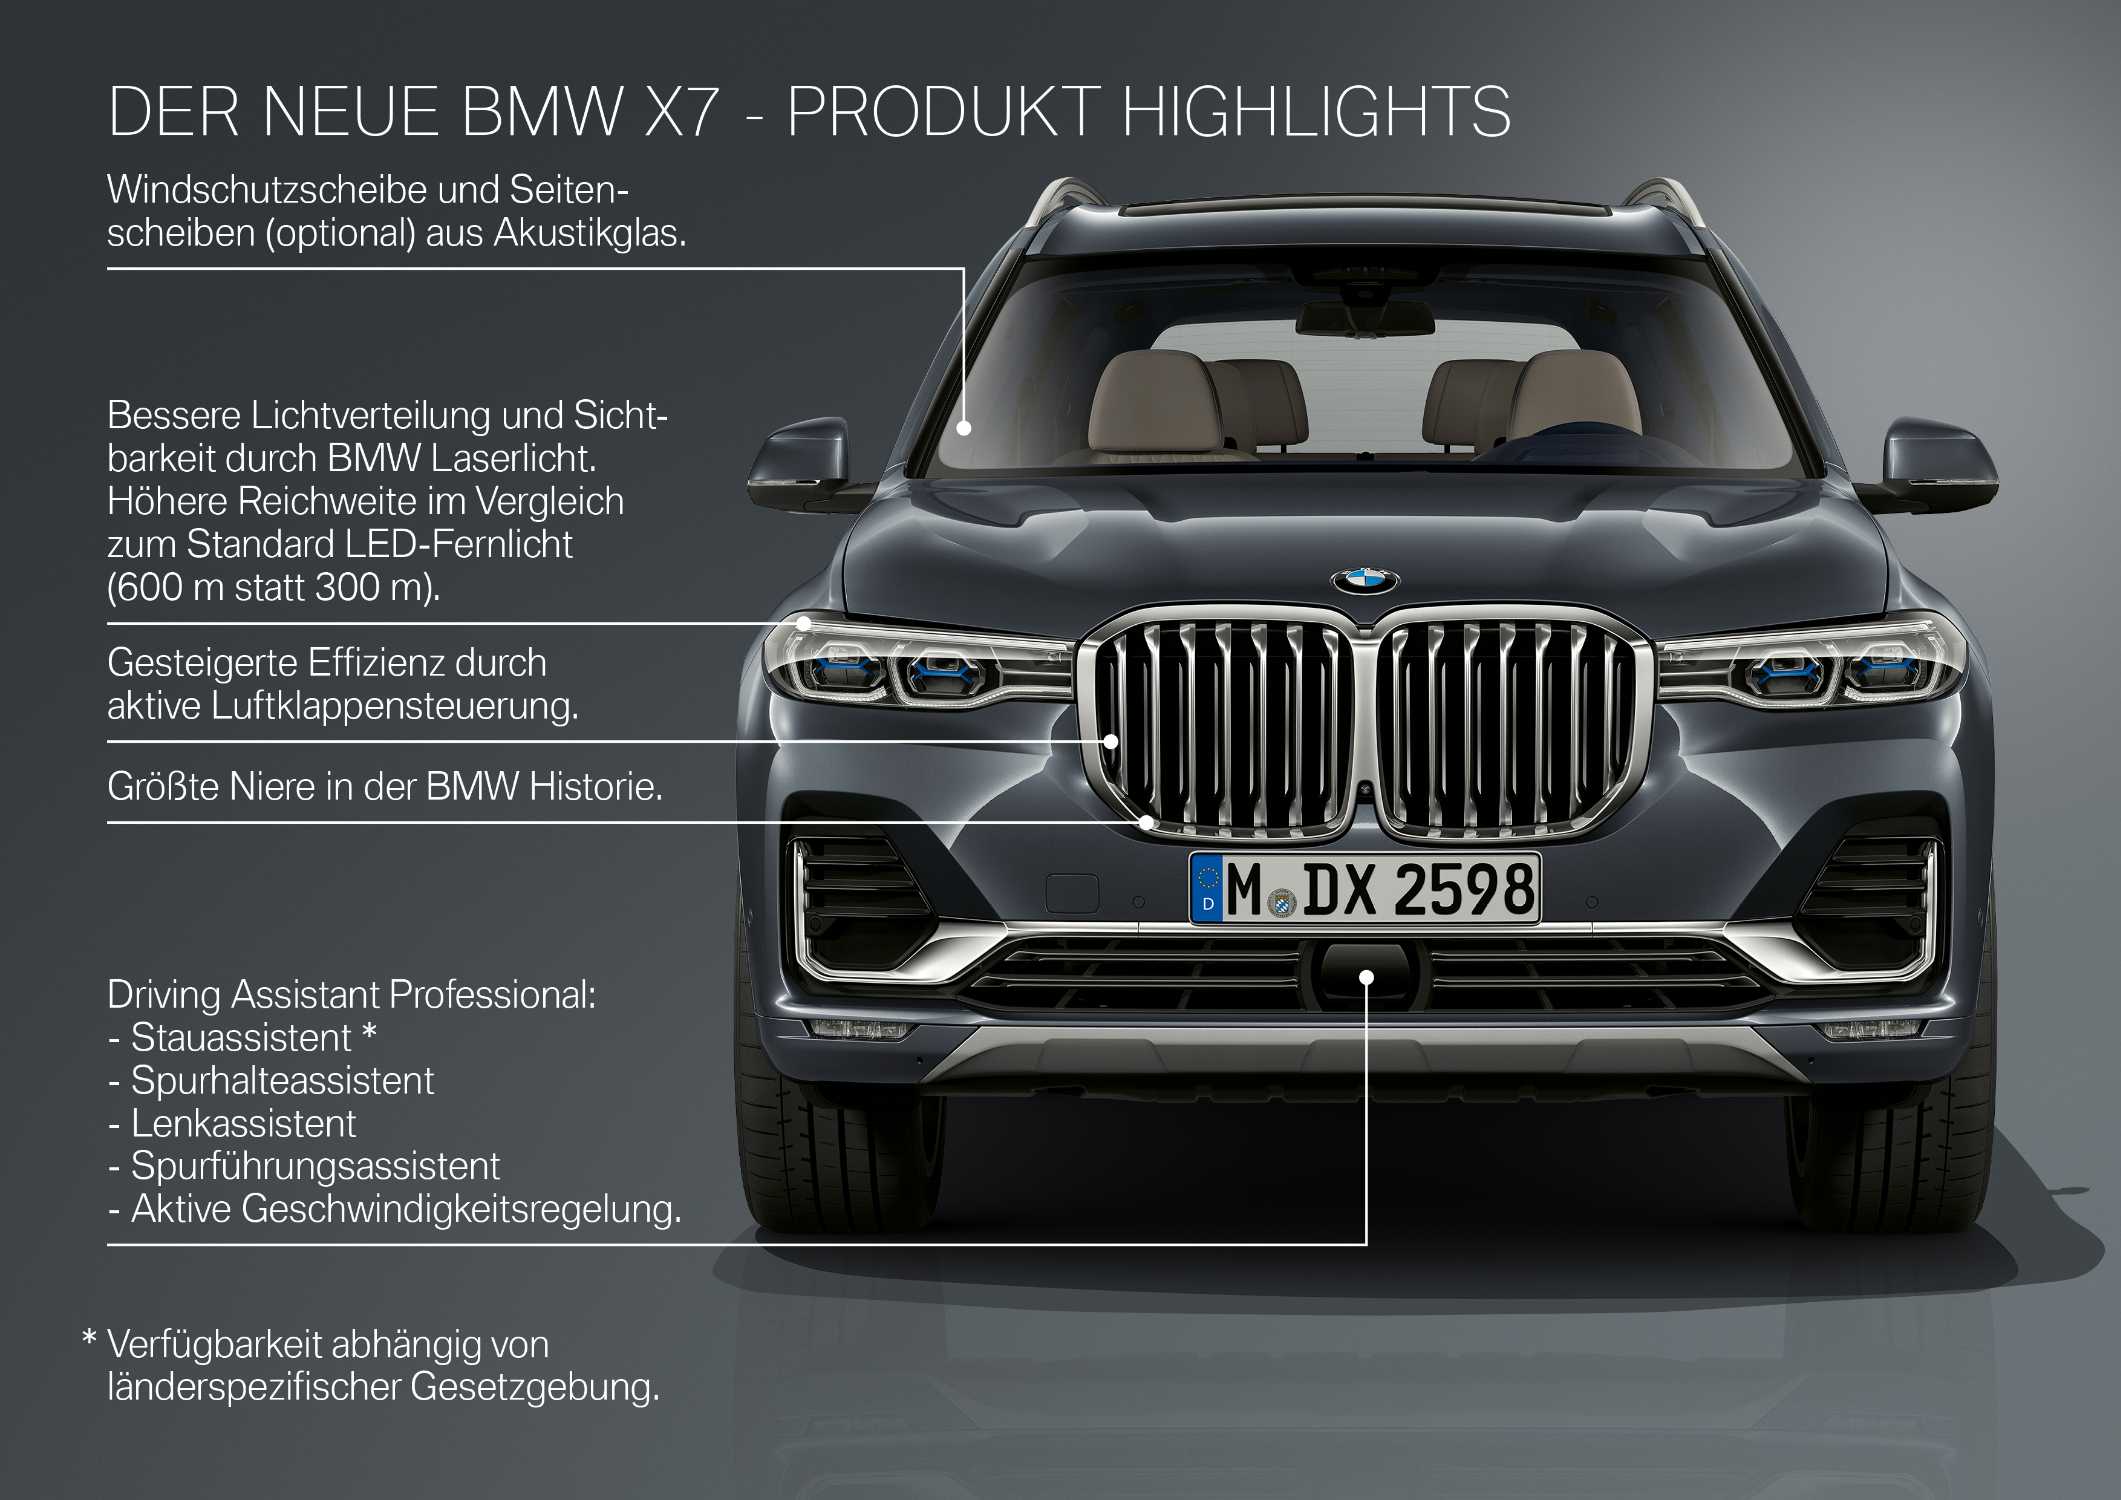 Der erste BMW X7 - Produkthighlights (10/2018).